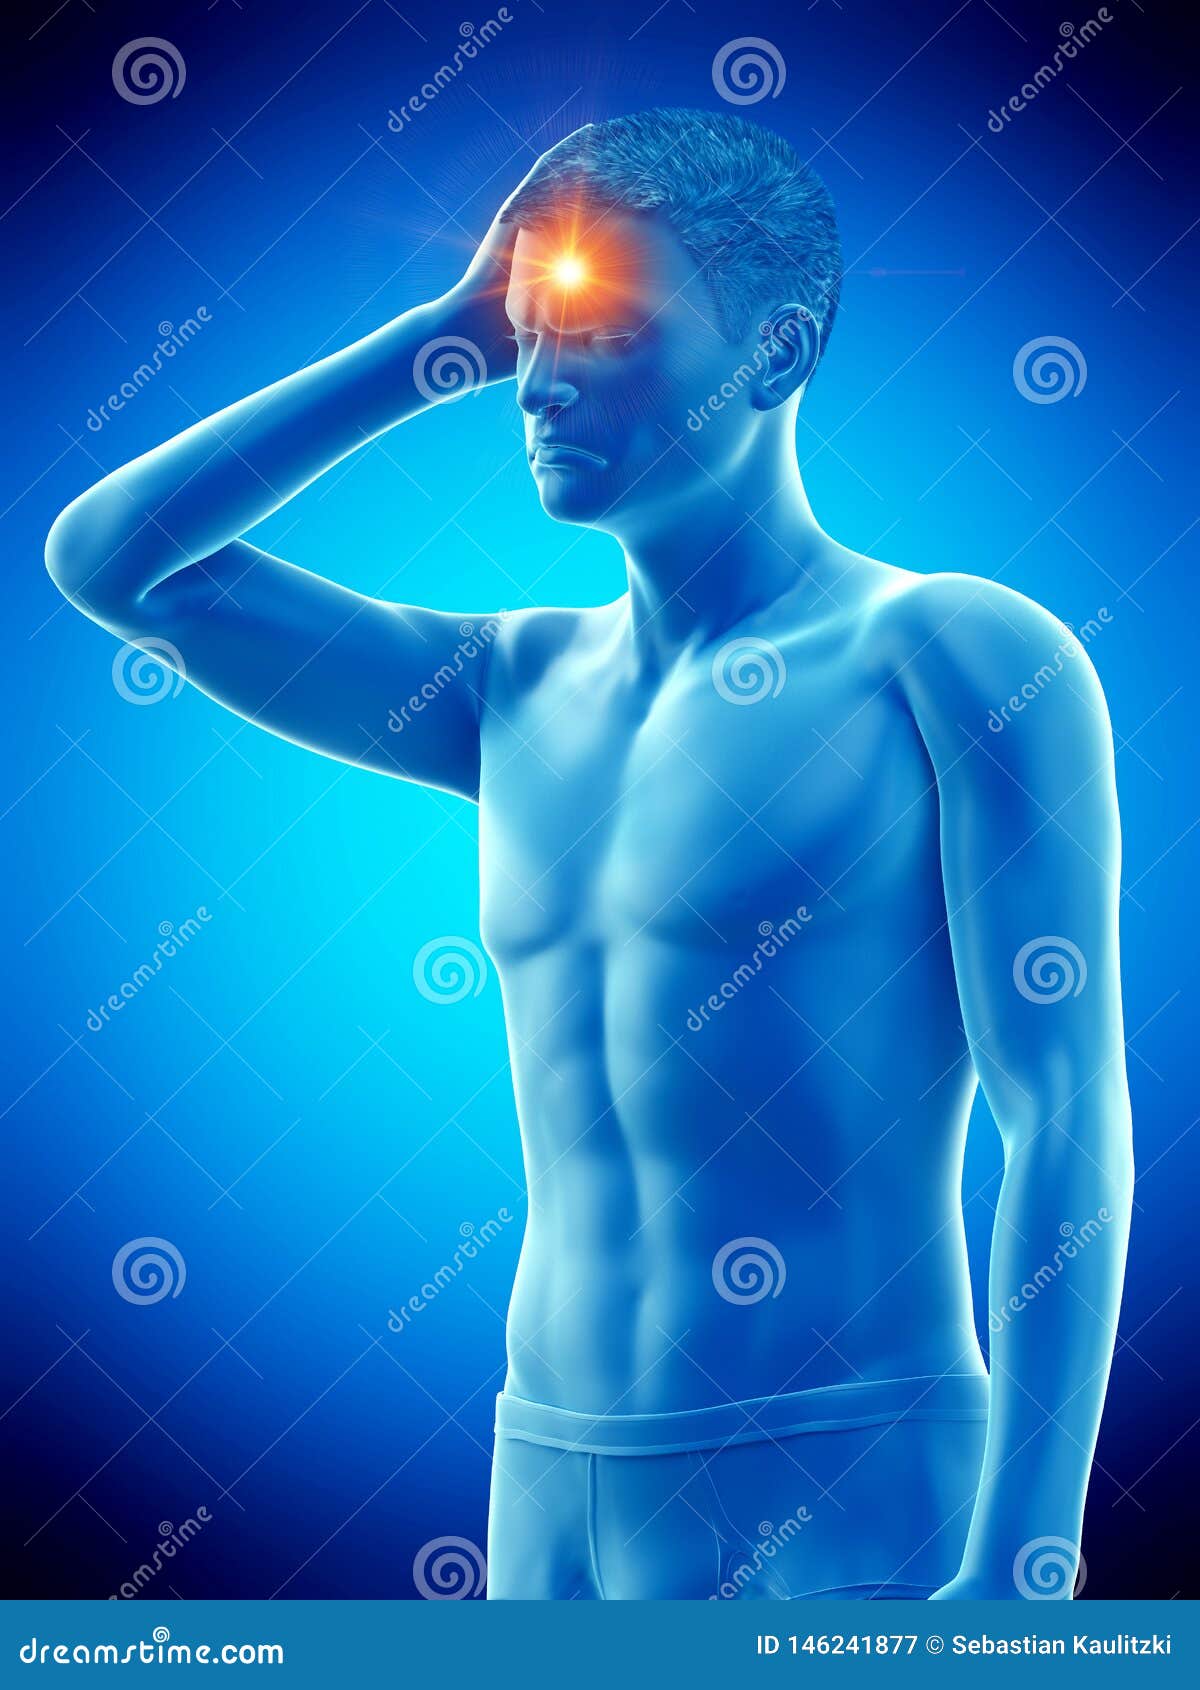 a man having headache